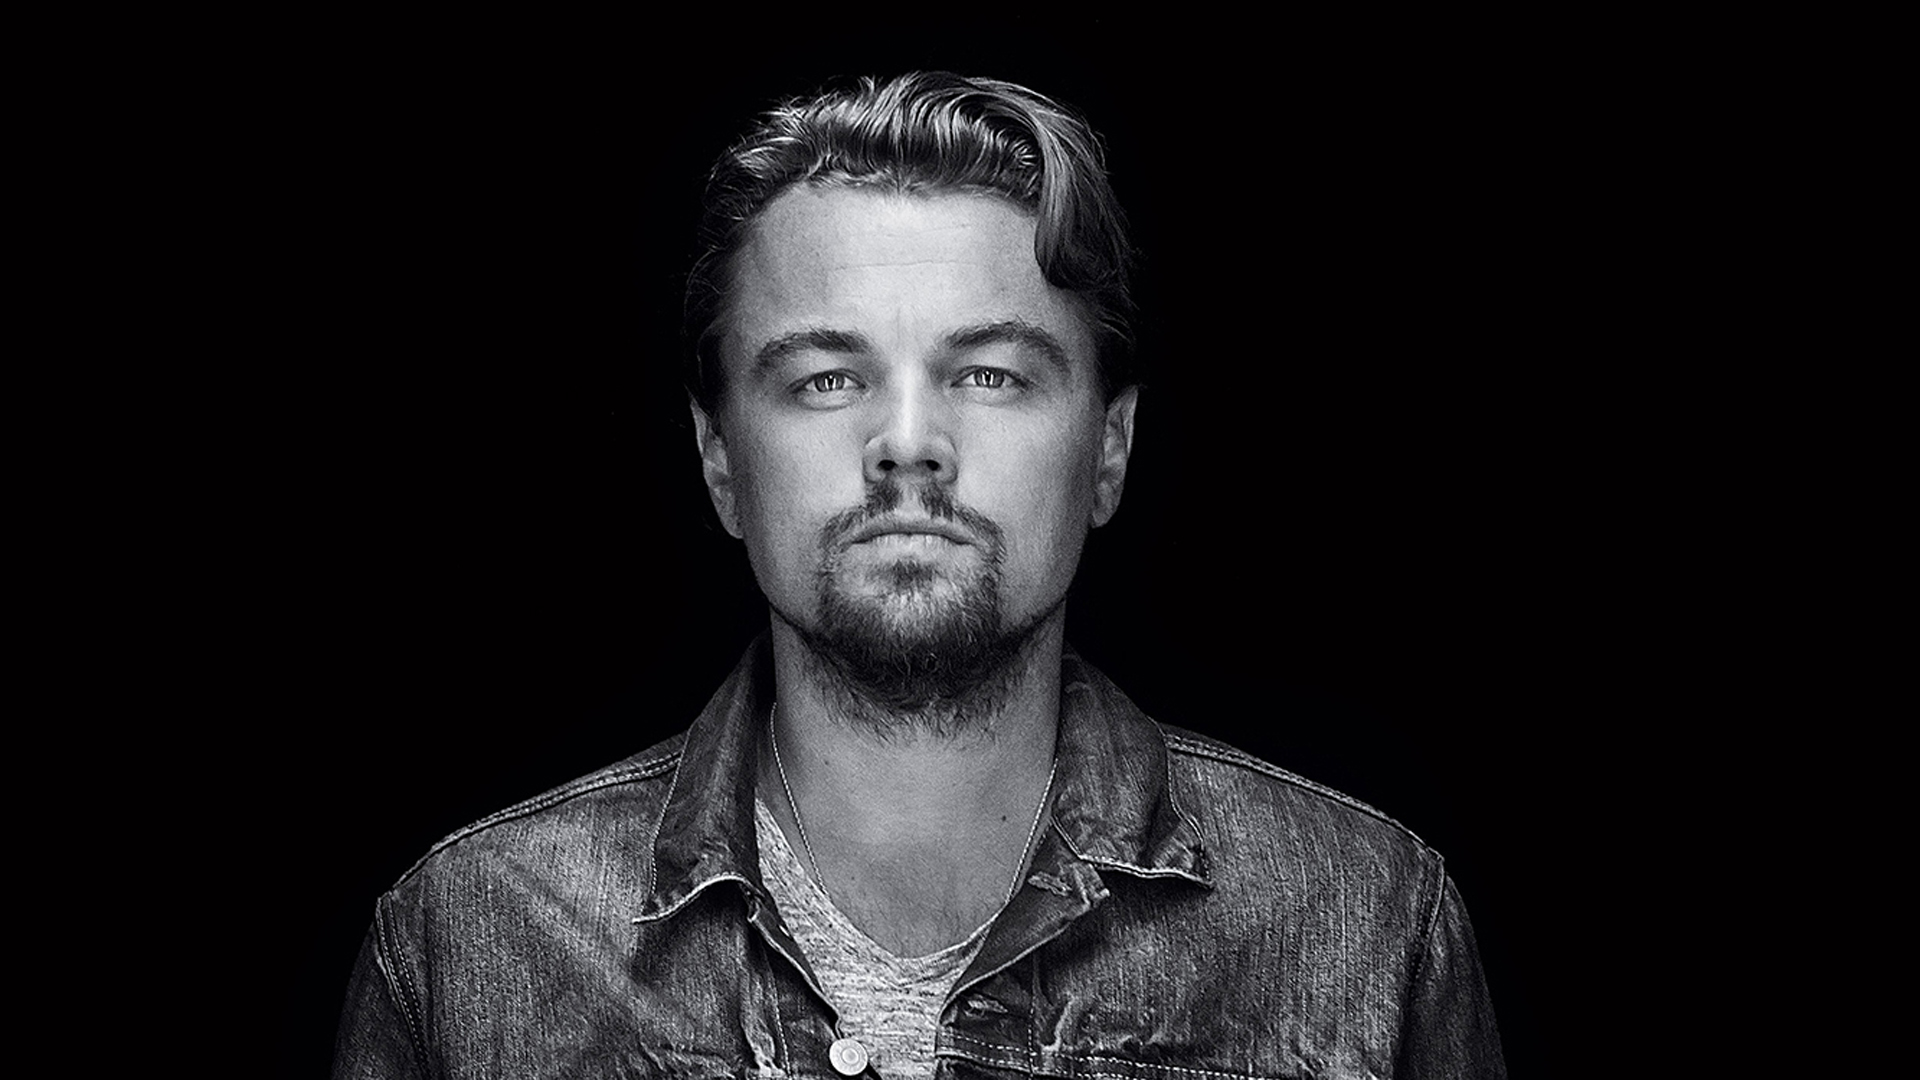 Leonardo DiCaprio HD Wallpapers | 4K Backgrounds - Wallpapers Den